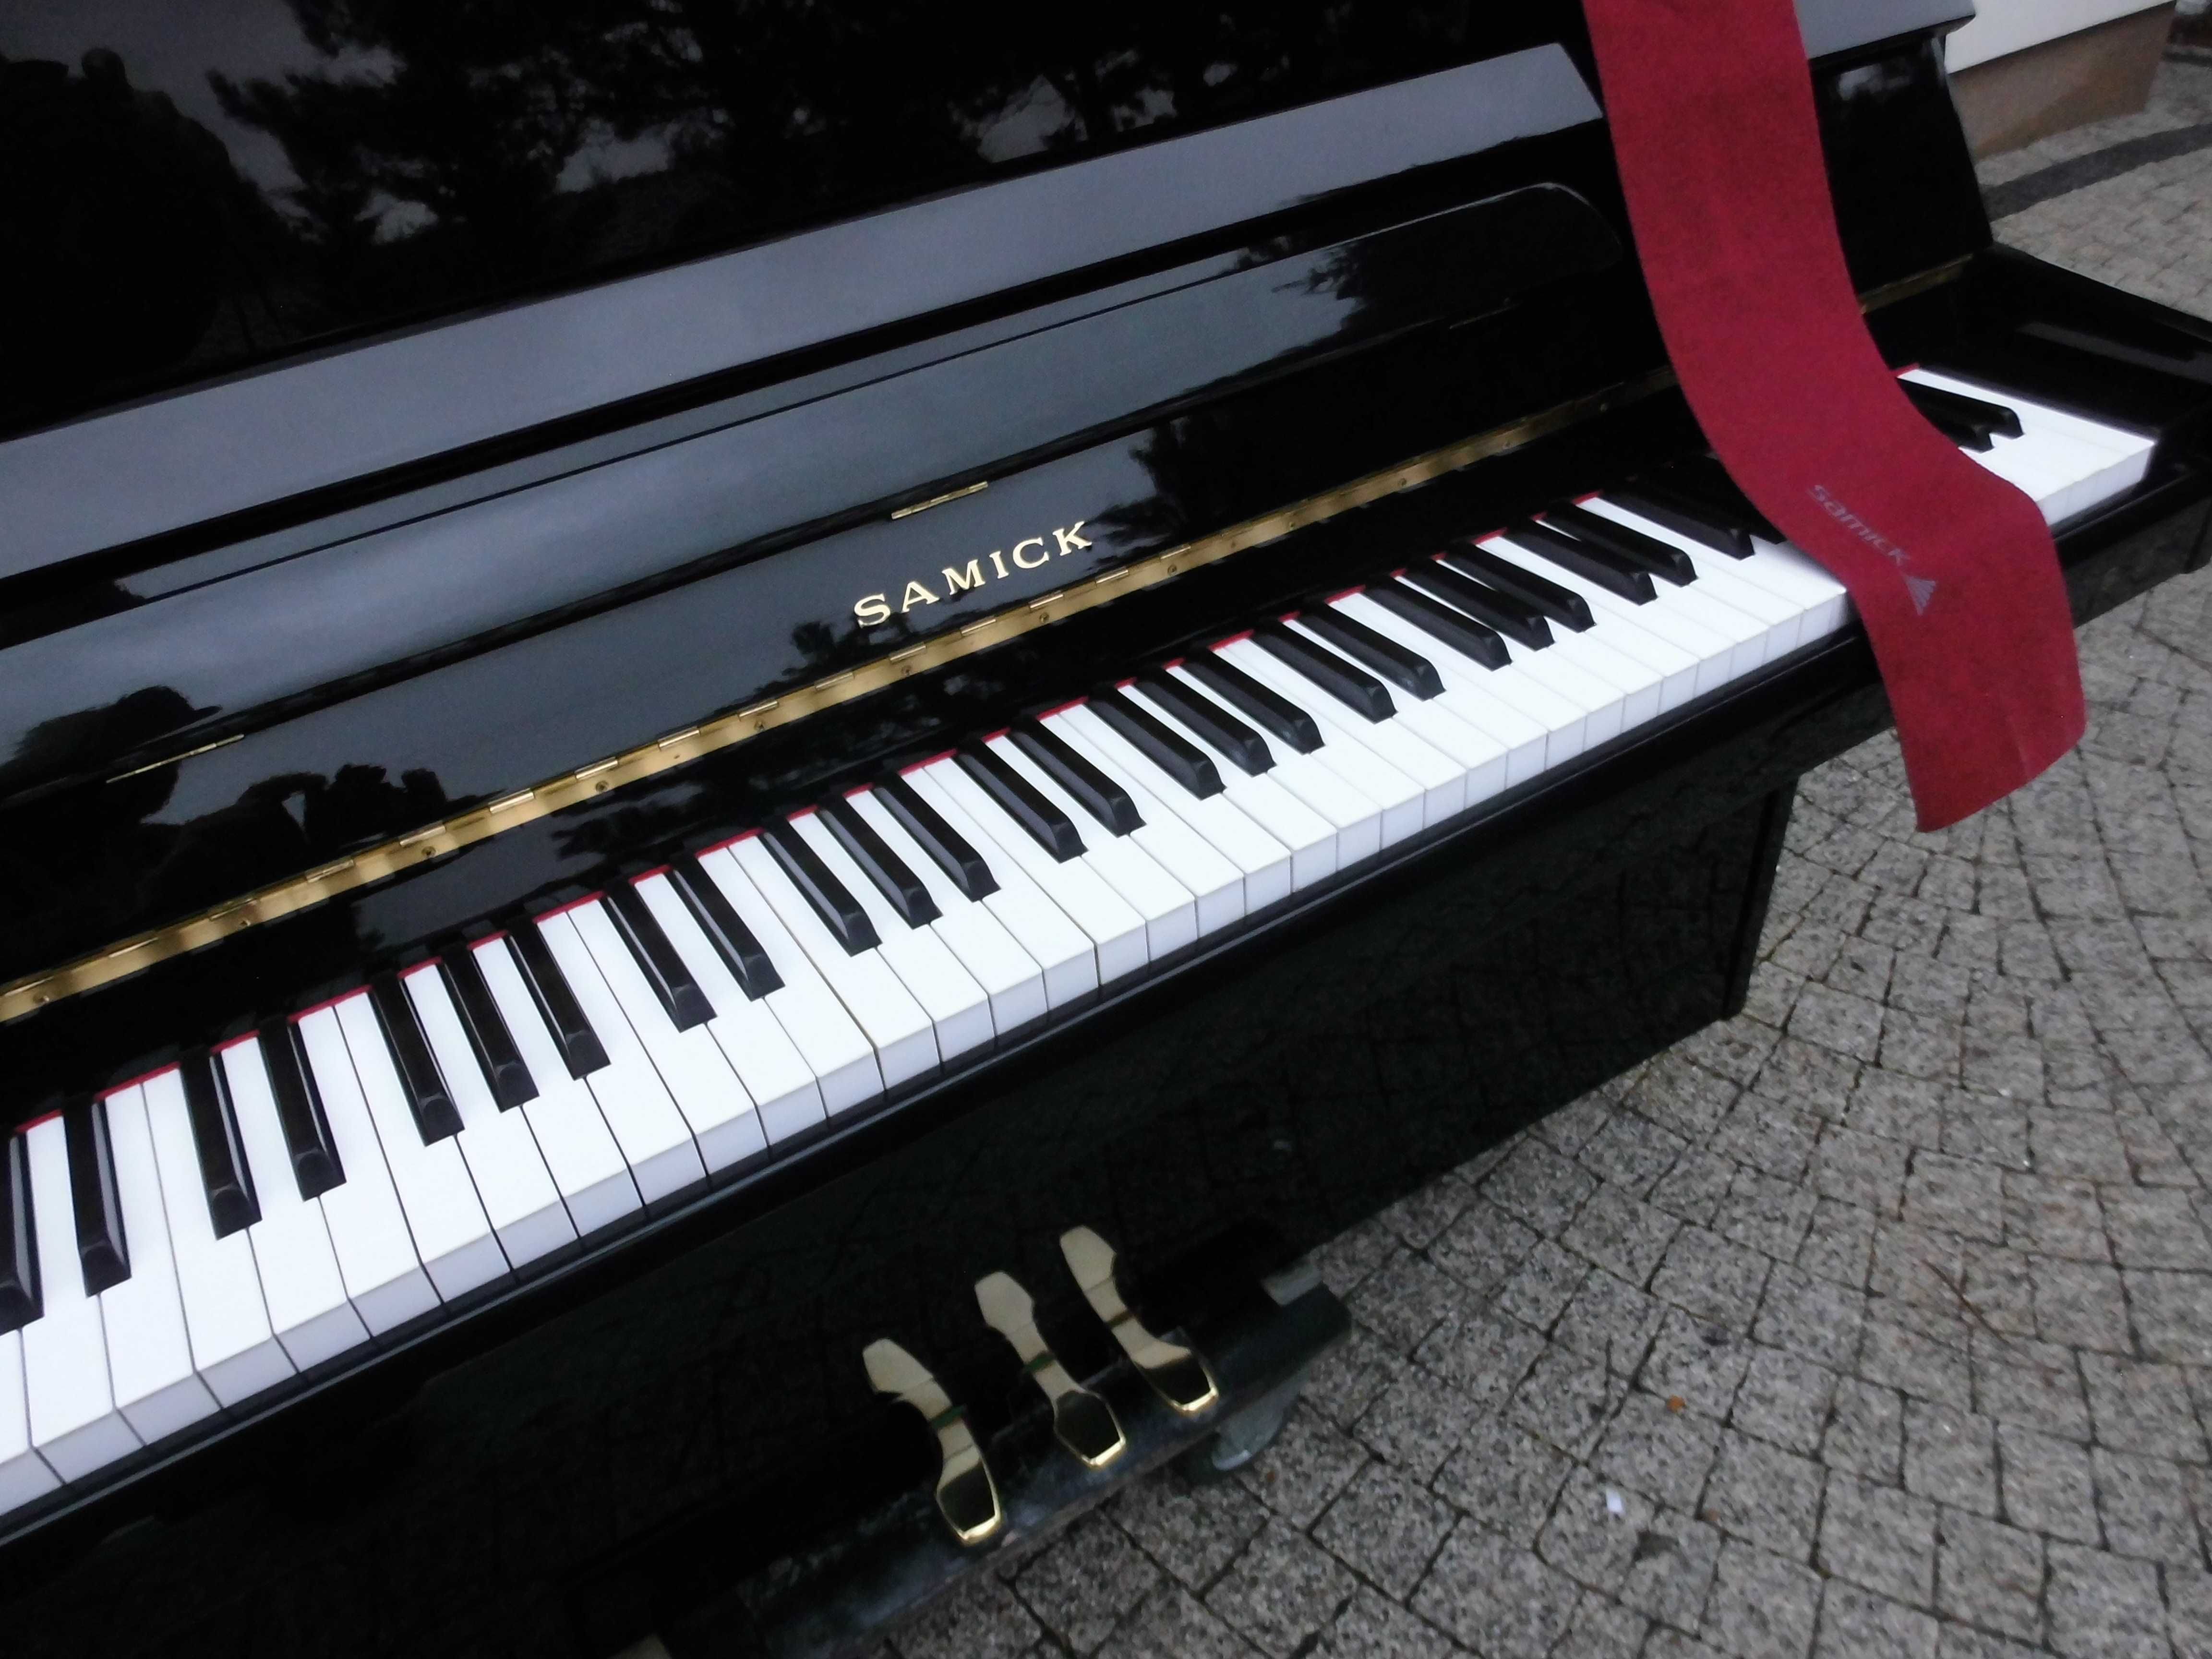 Pianino fazer kawai petrof weinbach samick największy wybor dostawa